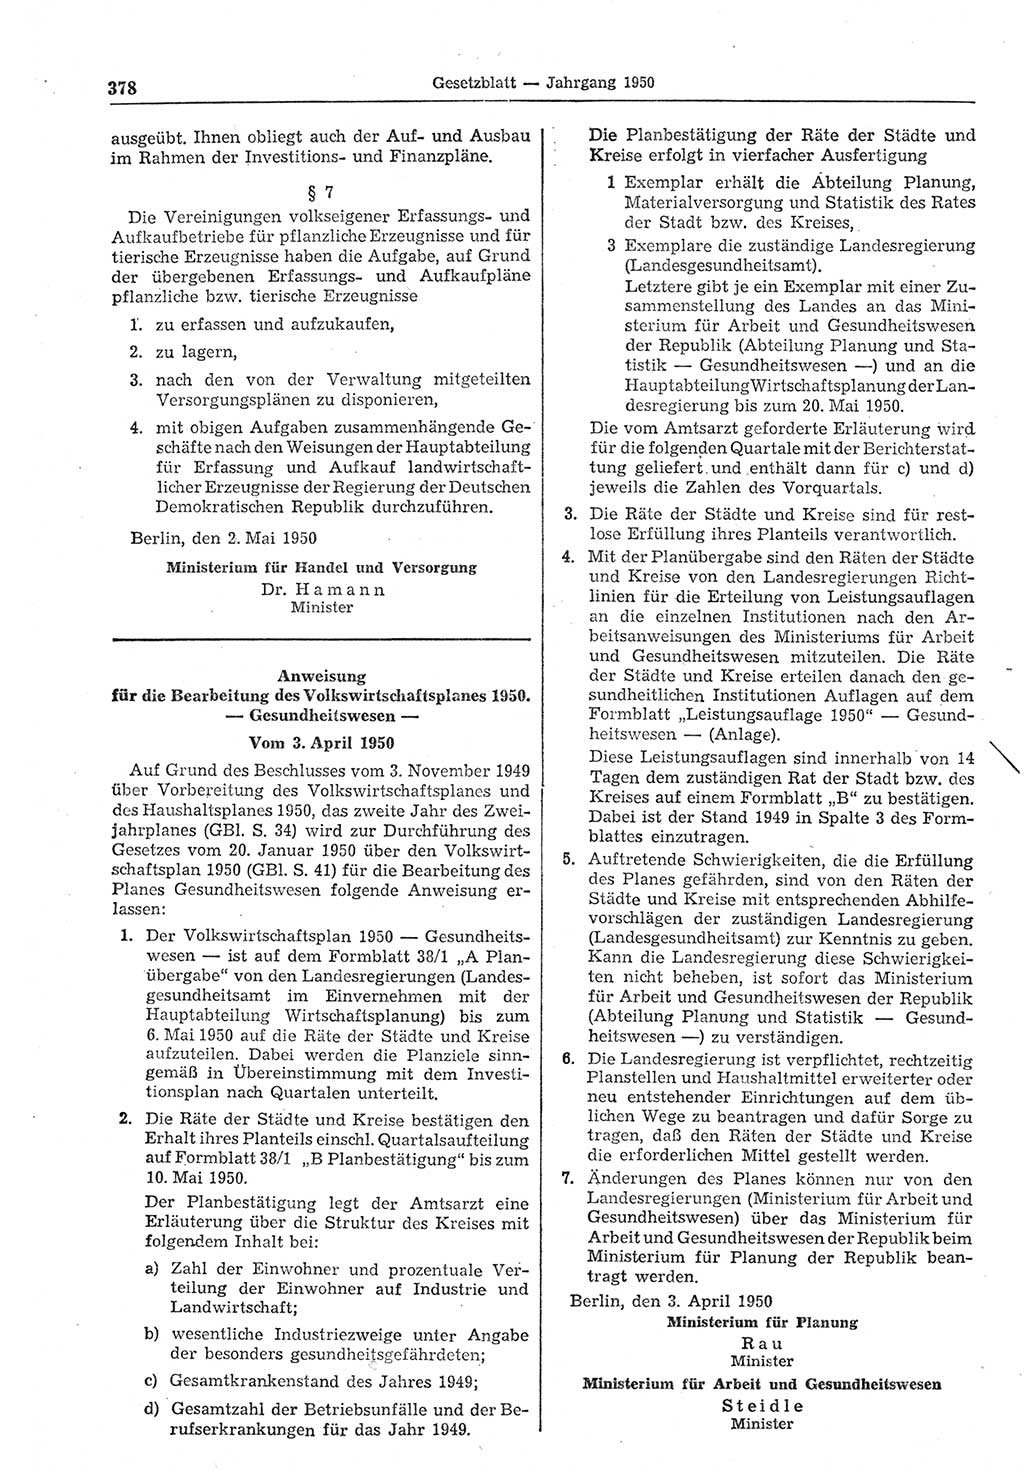 Gesetzblatt (GBl.) der Deutschen Demokratischen Republik (DDR) 1950, Seite 378 (GBl. DDR 1950, S. 378)